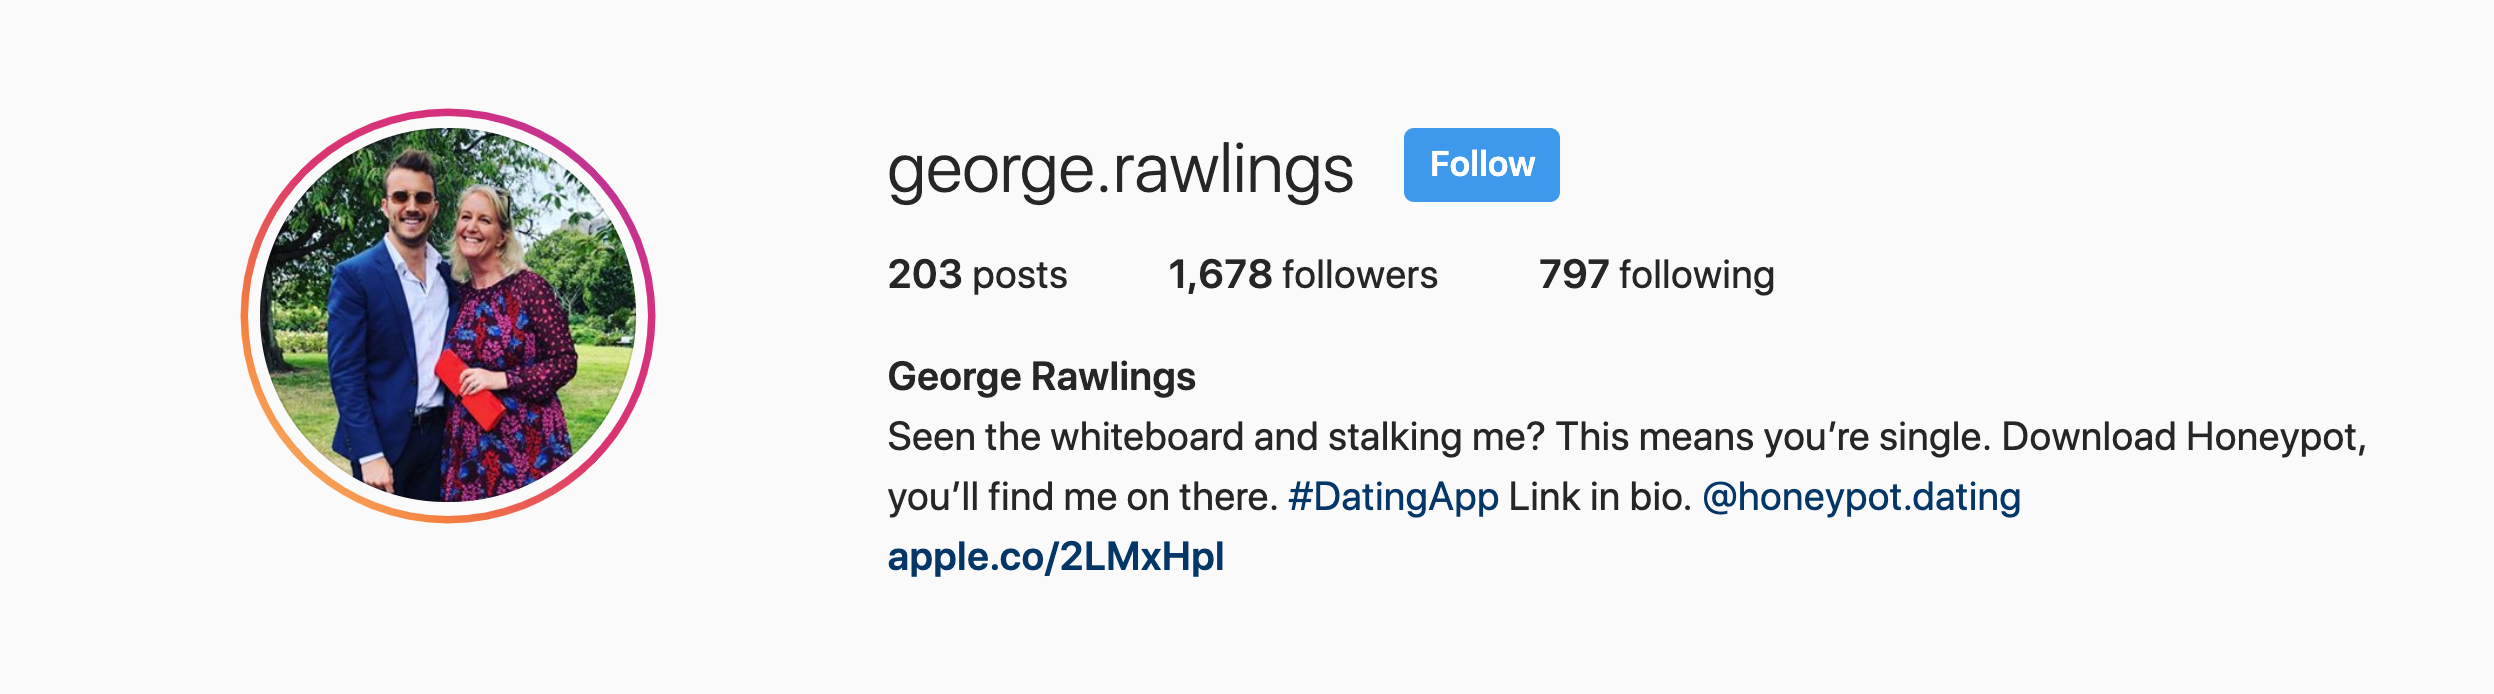 George Rawlings Honeypot Instagram